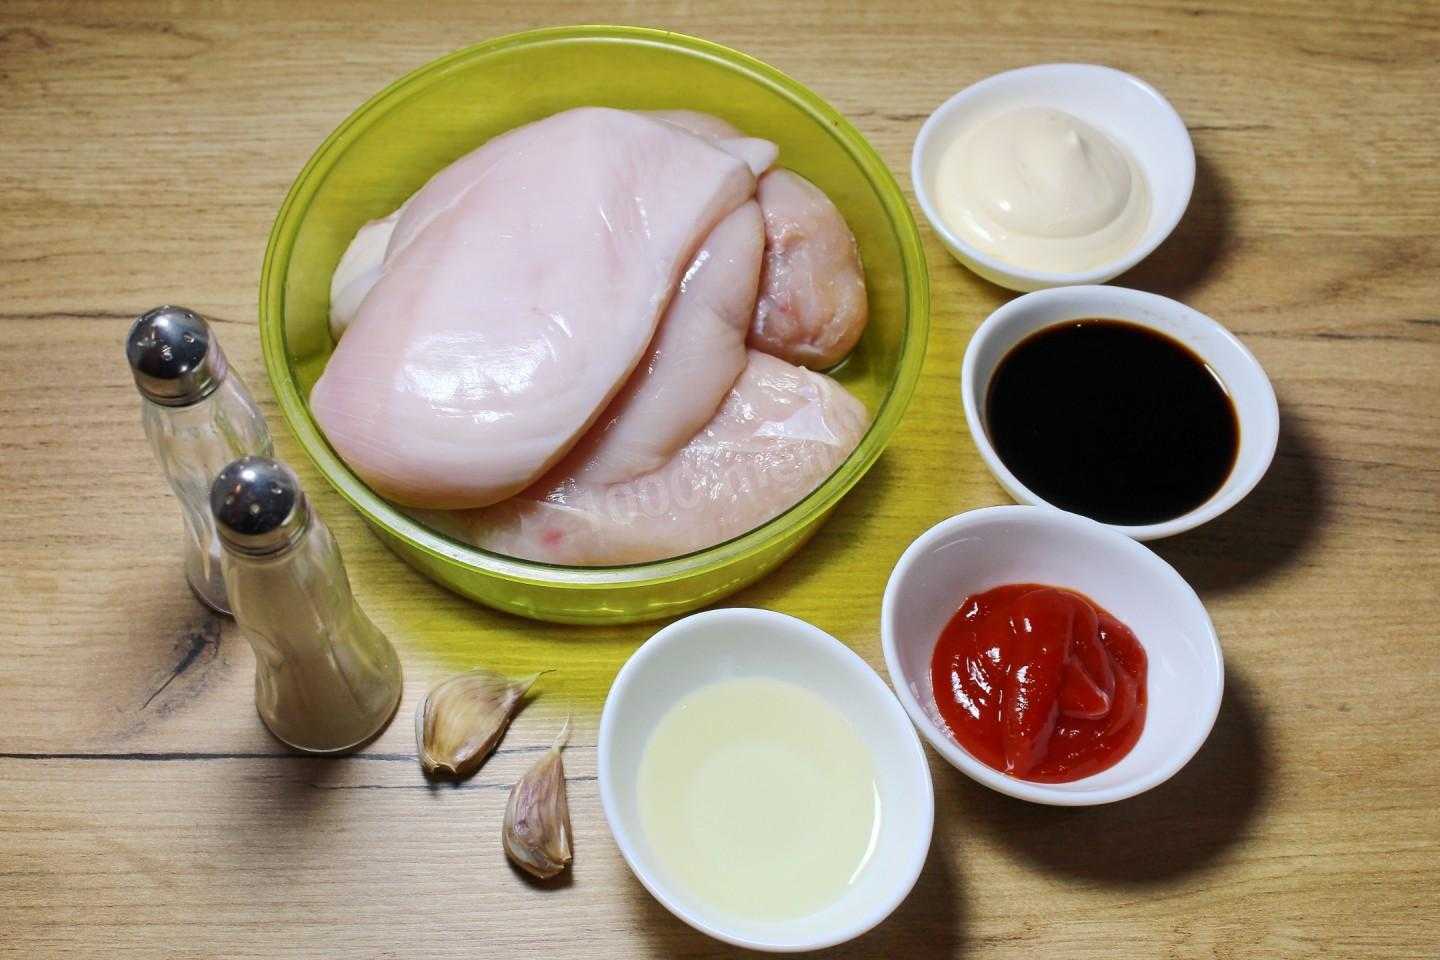 Паста с курицей - 10 вкусных рецептов пошагово (с фото)